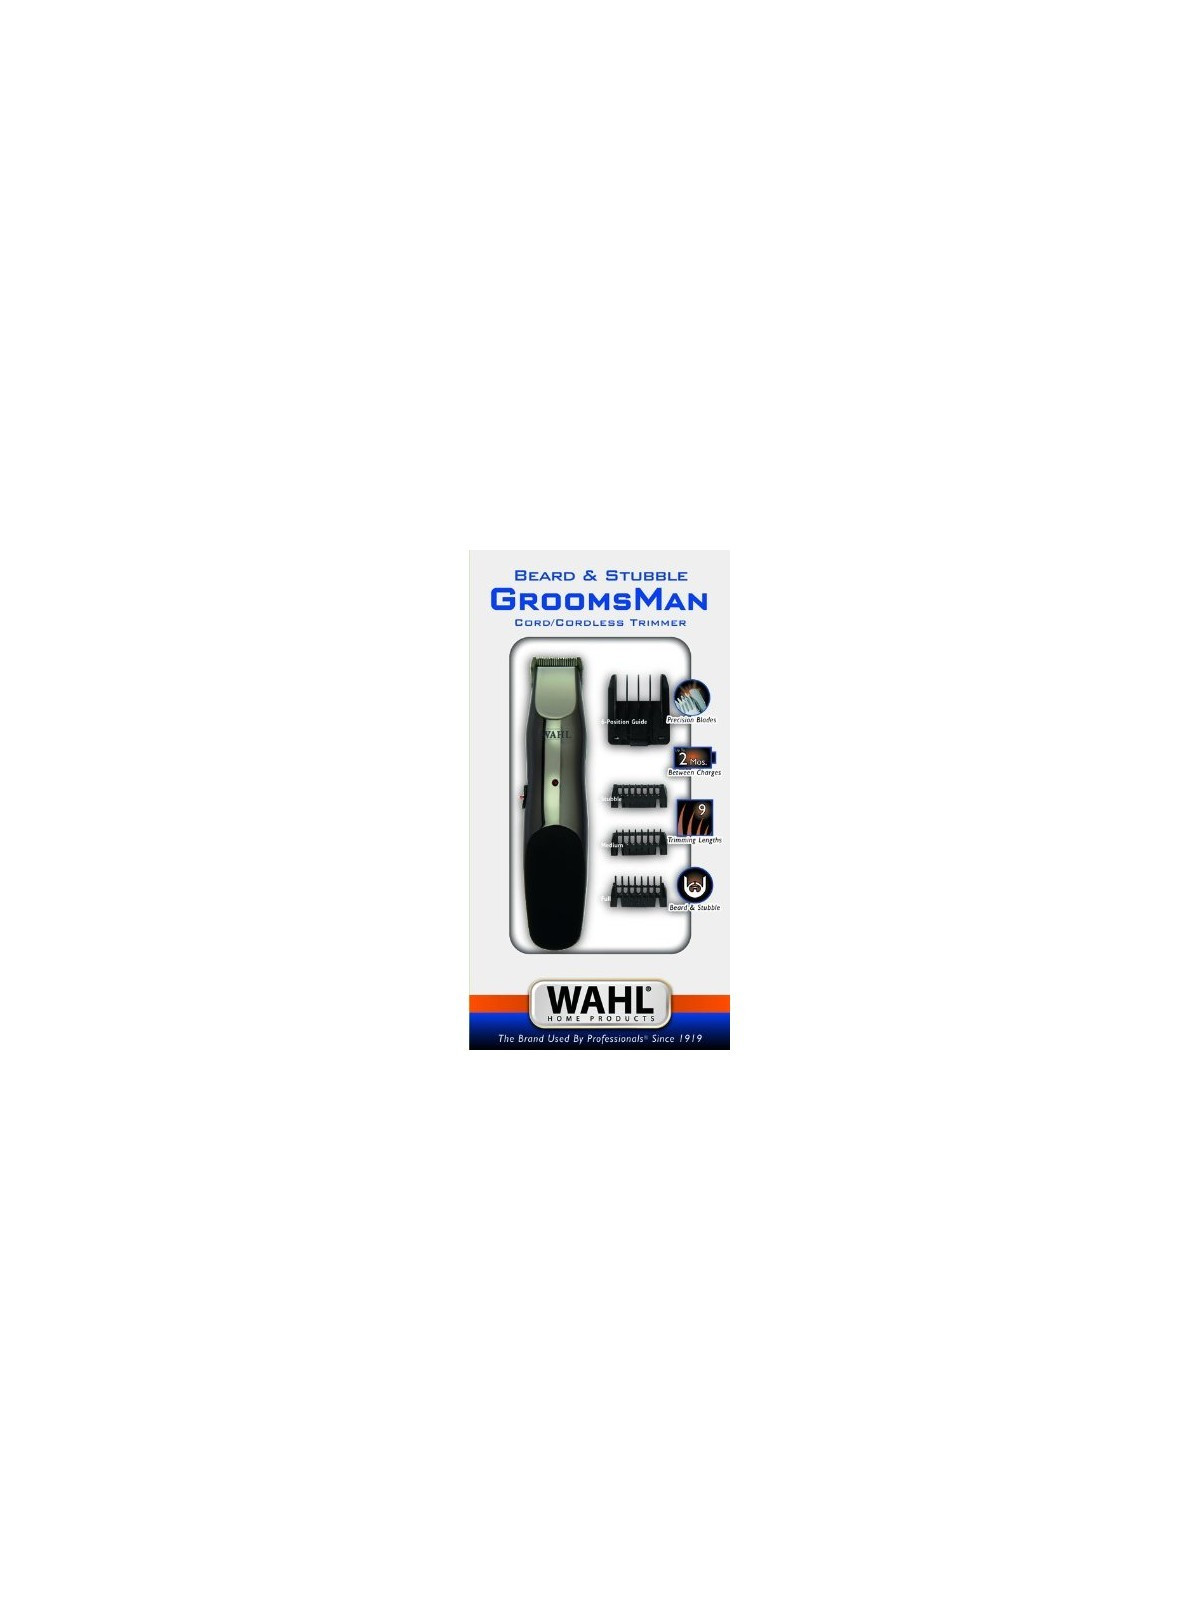 Įkraunama plaukų kantavimo mašinėlė-trimeris Wahl Home GroomsMan Rechargeable Trimmer 9918-1416